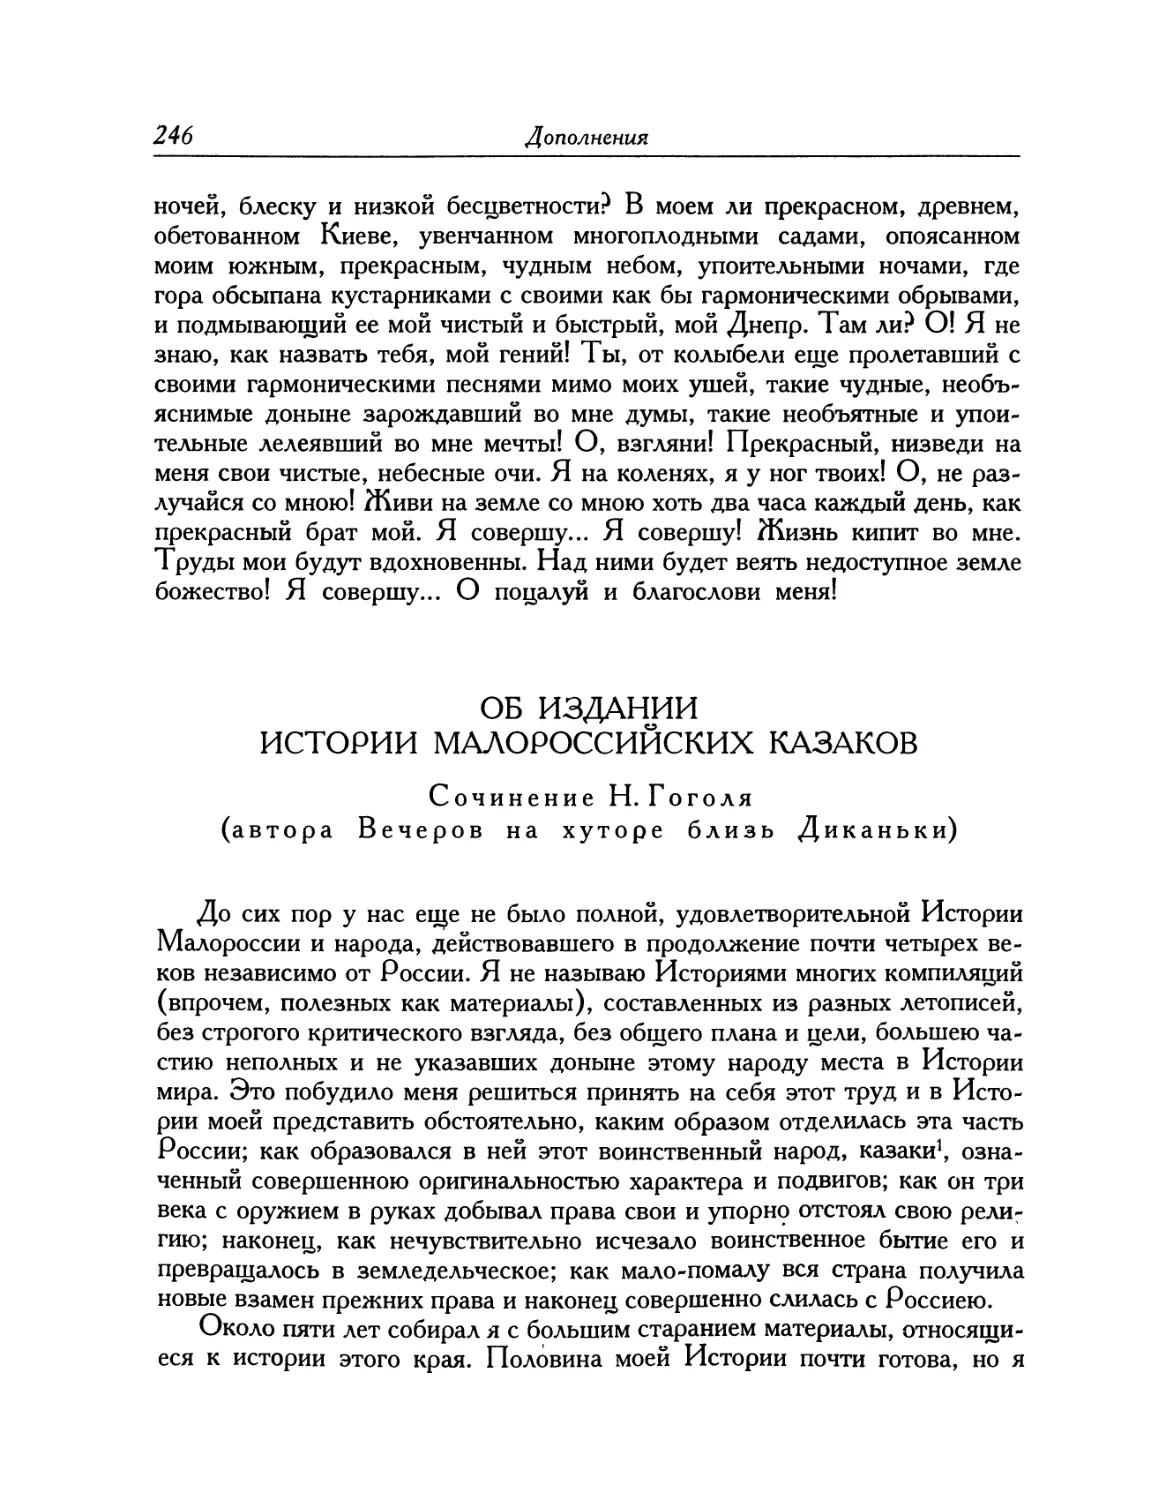 Об издании Истории малороссийских казаков